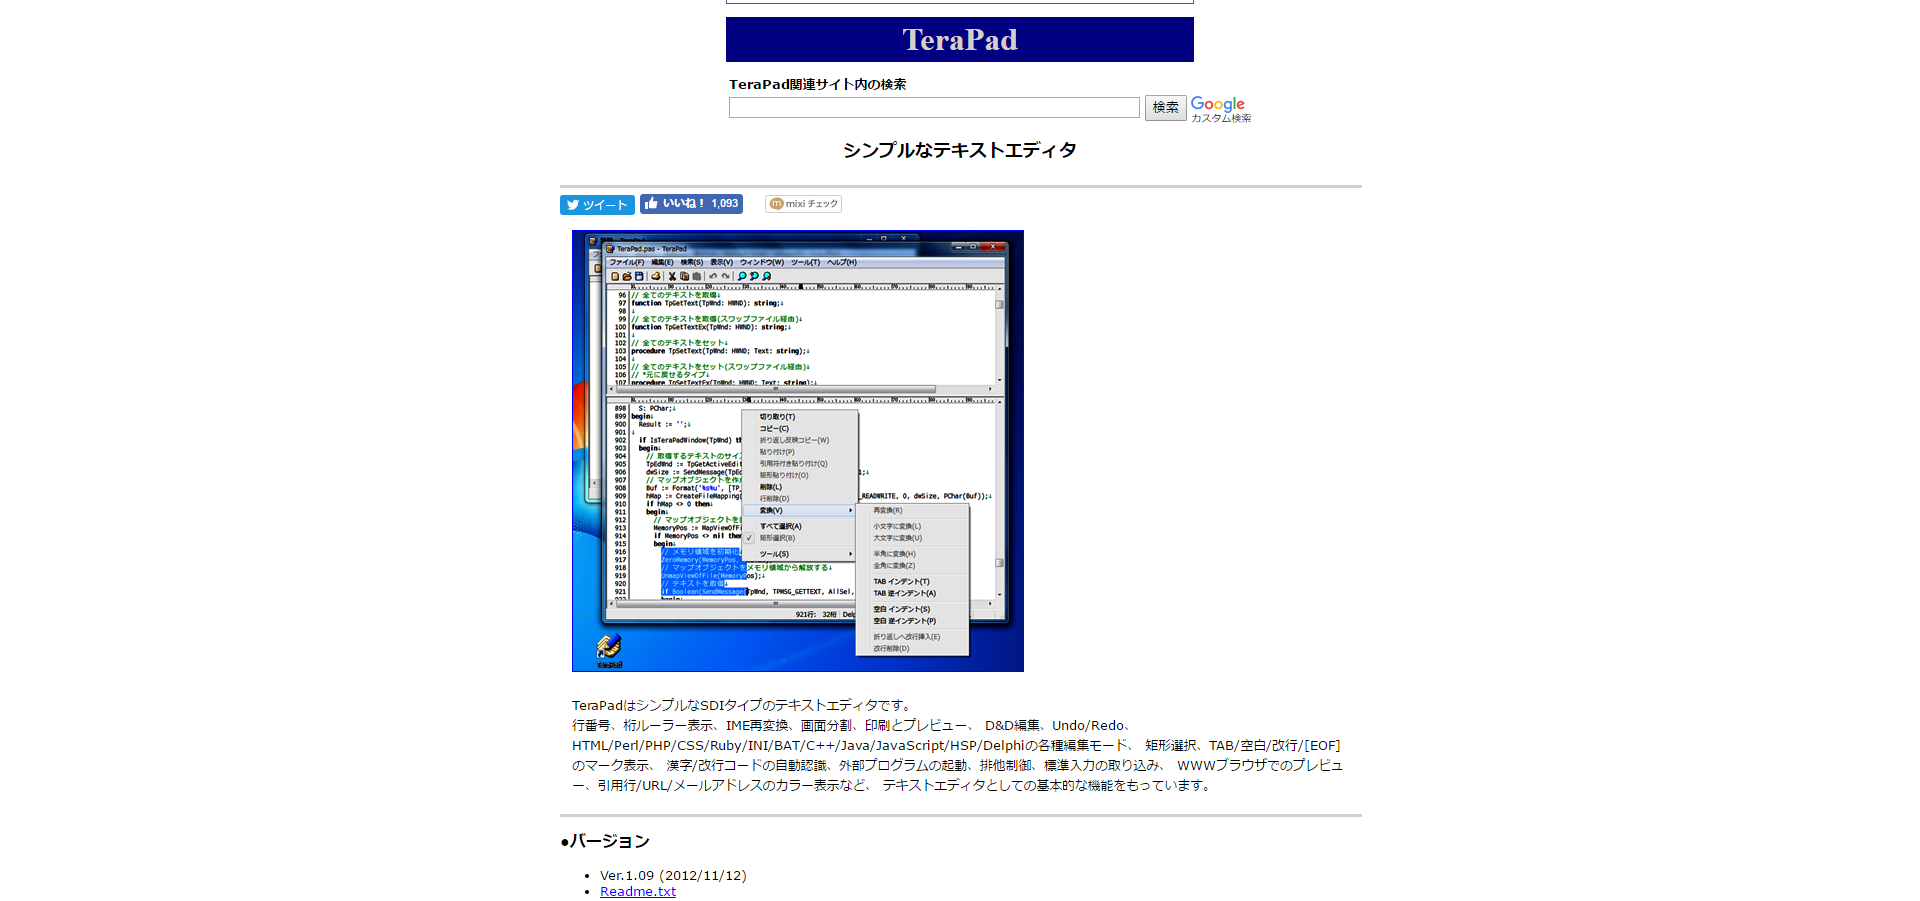 「TeraPad」のサイト